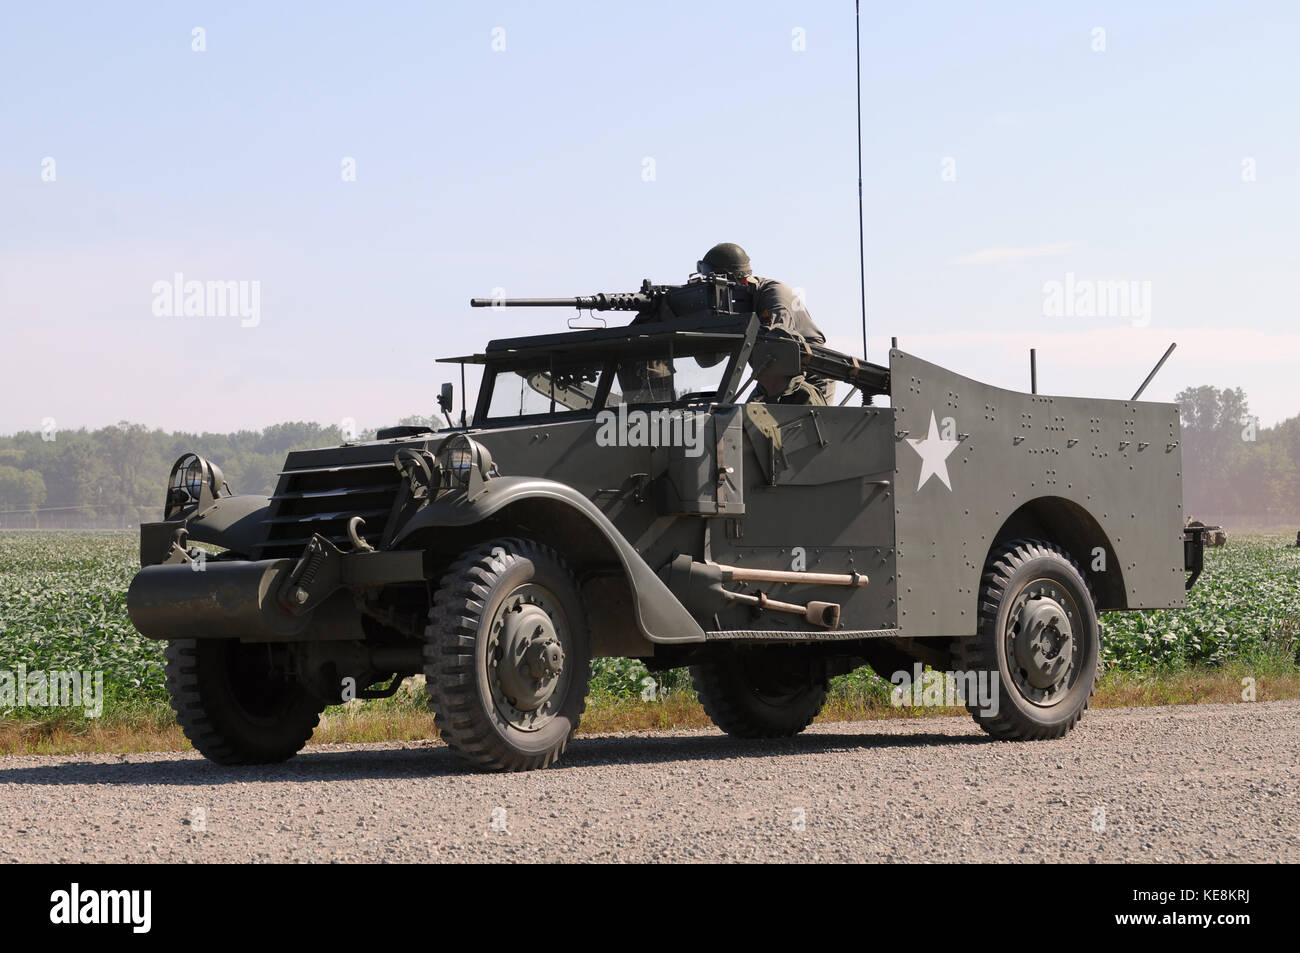 World War II era armored car with gun Stock Photo